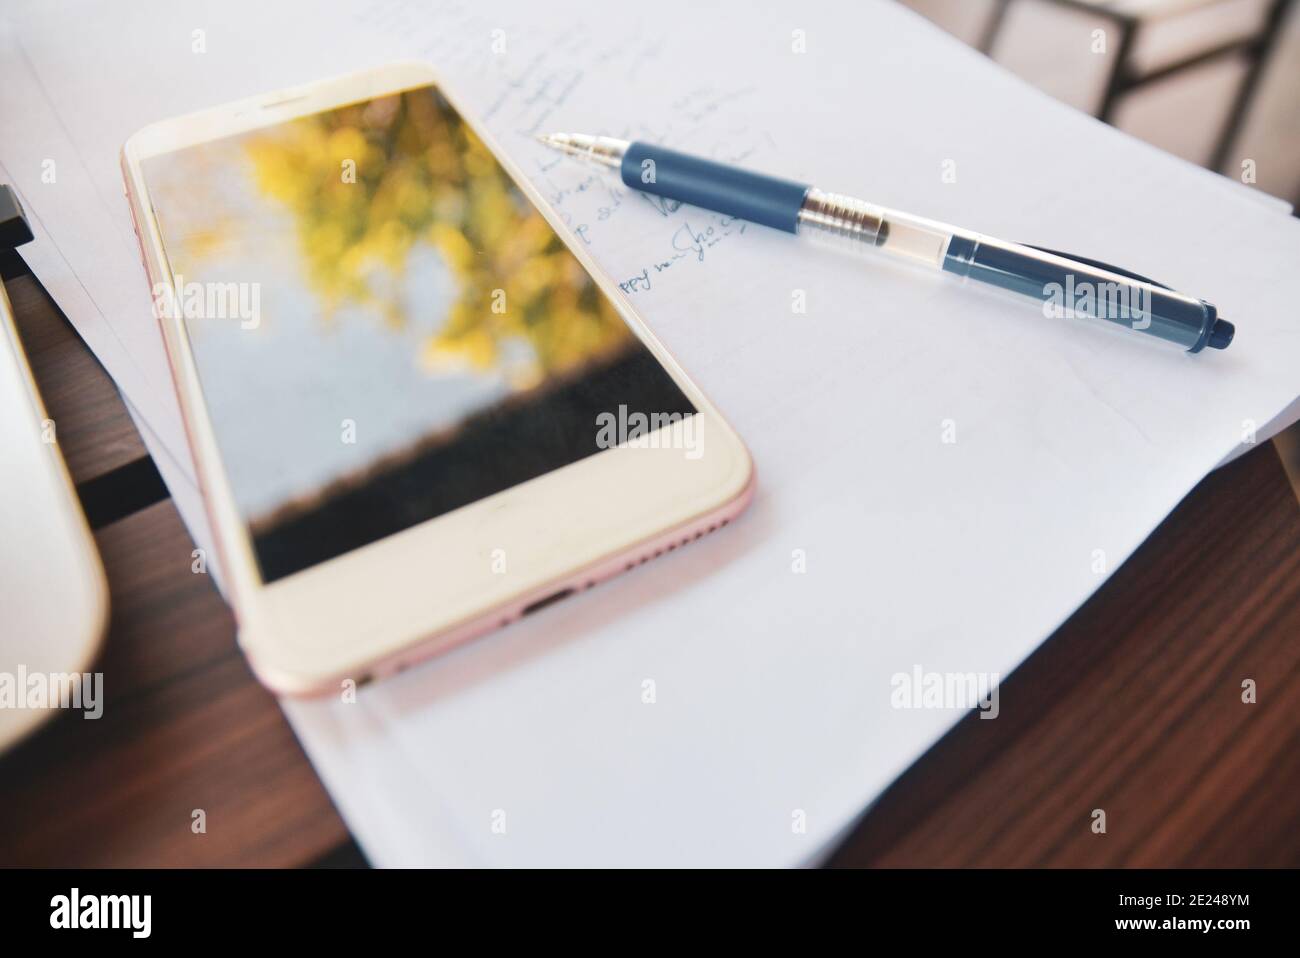 Smartphone sujet flou avec stylo sur document de travail papier Banque D'Images